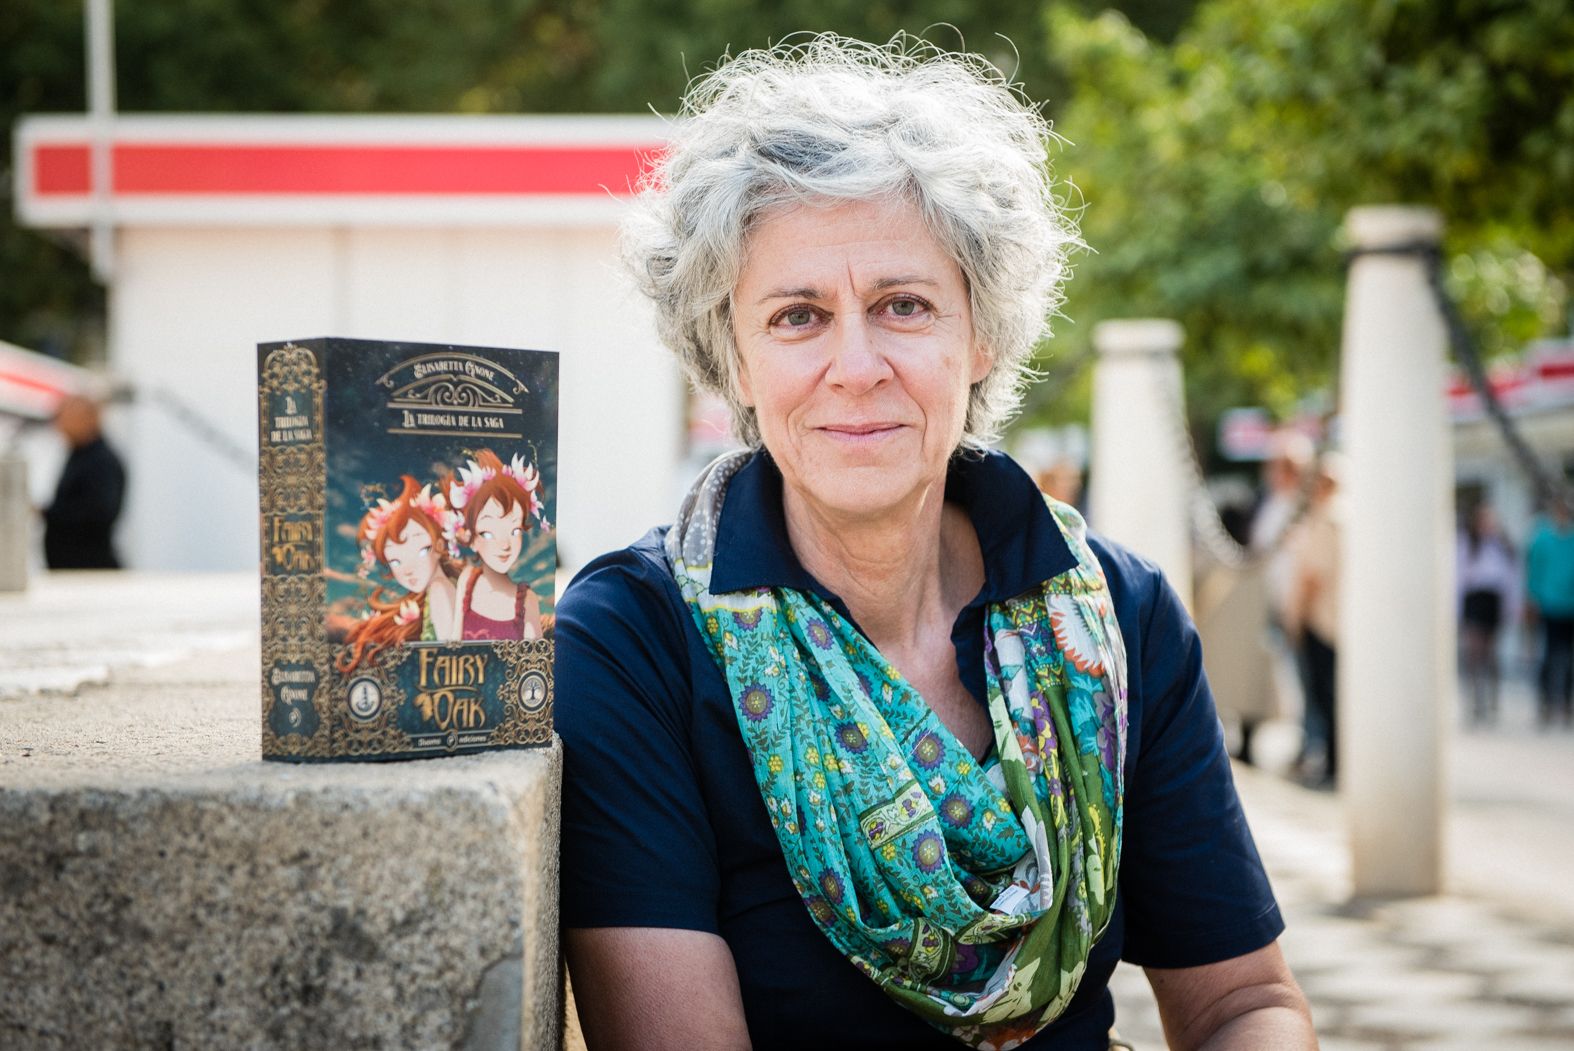 Elisabetta Gnone, autora de W.I.T.C.H y la saga fantástica 'Faity Oak' en la Feria del Libro de Sevilla.